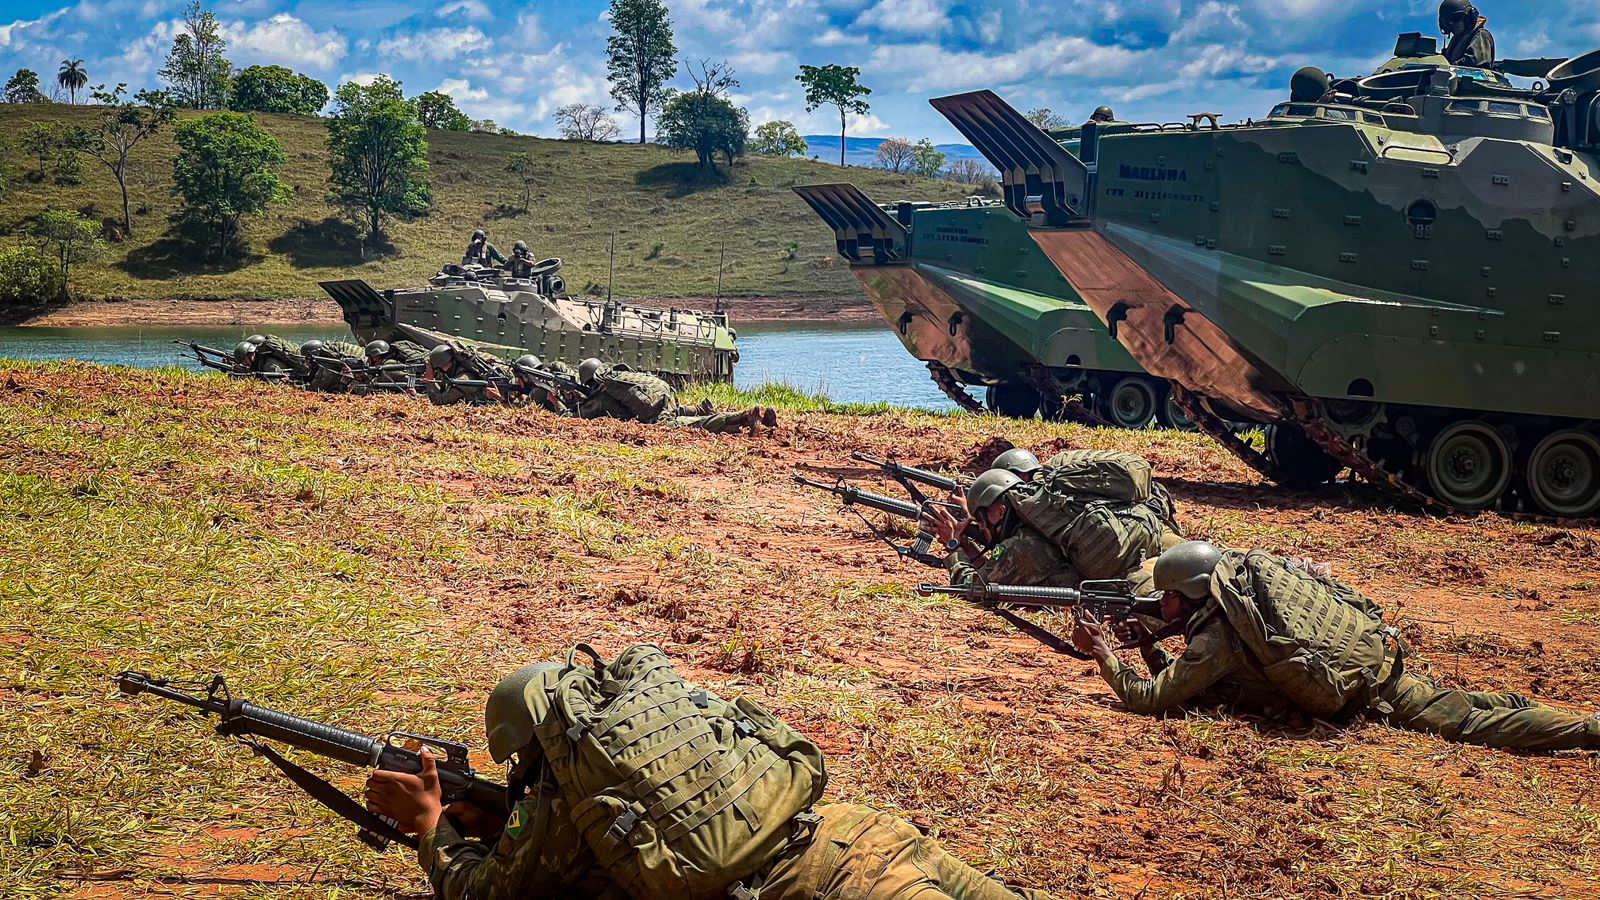 Marinha do Brasil realiza operação militar na região de Furnas, em MG - Divulgação Marinha do Brasil